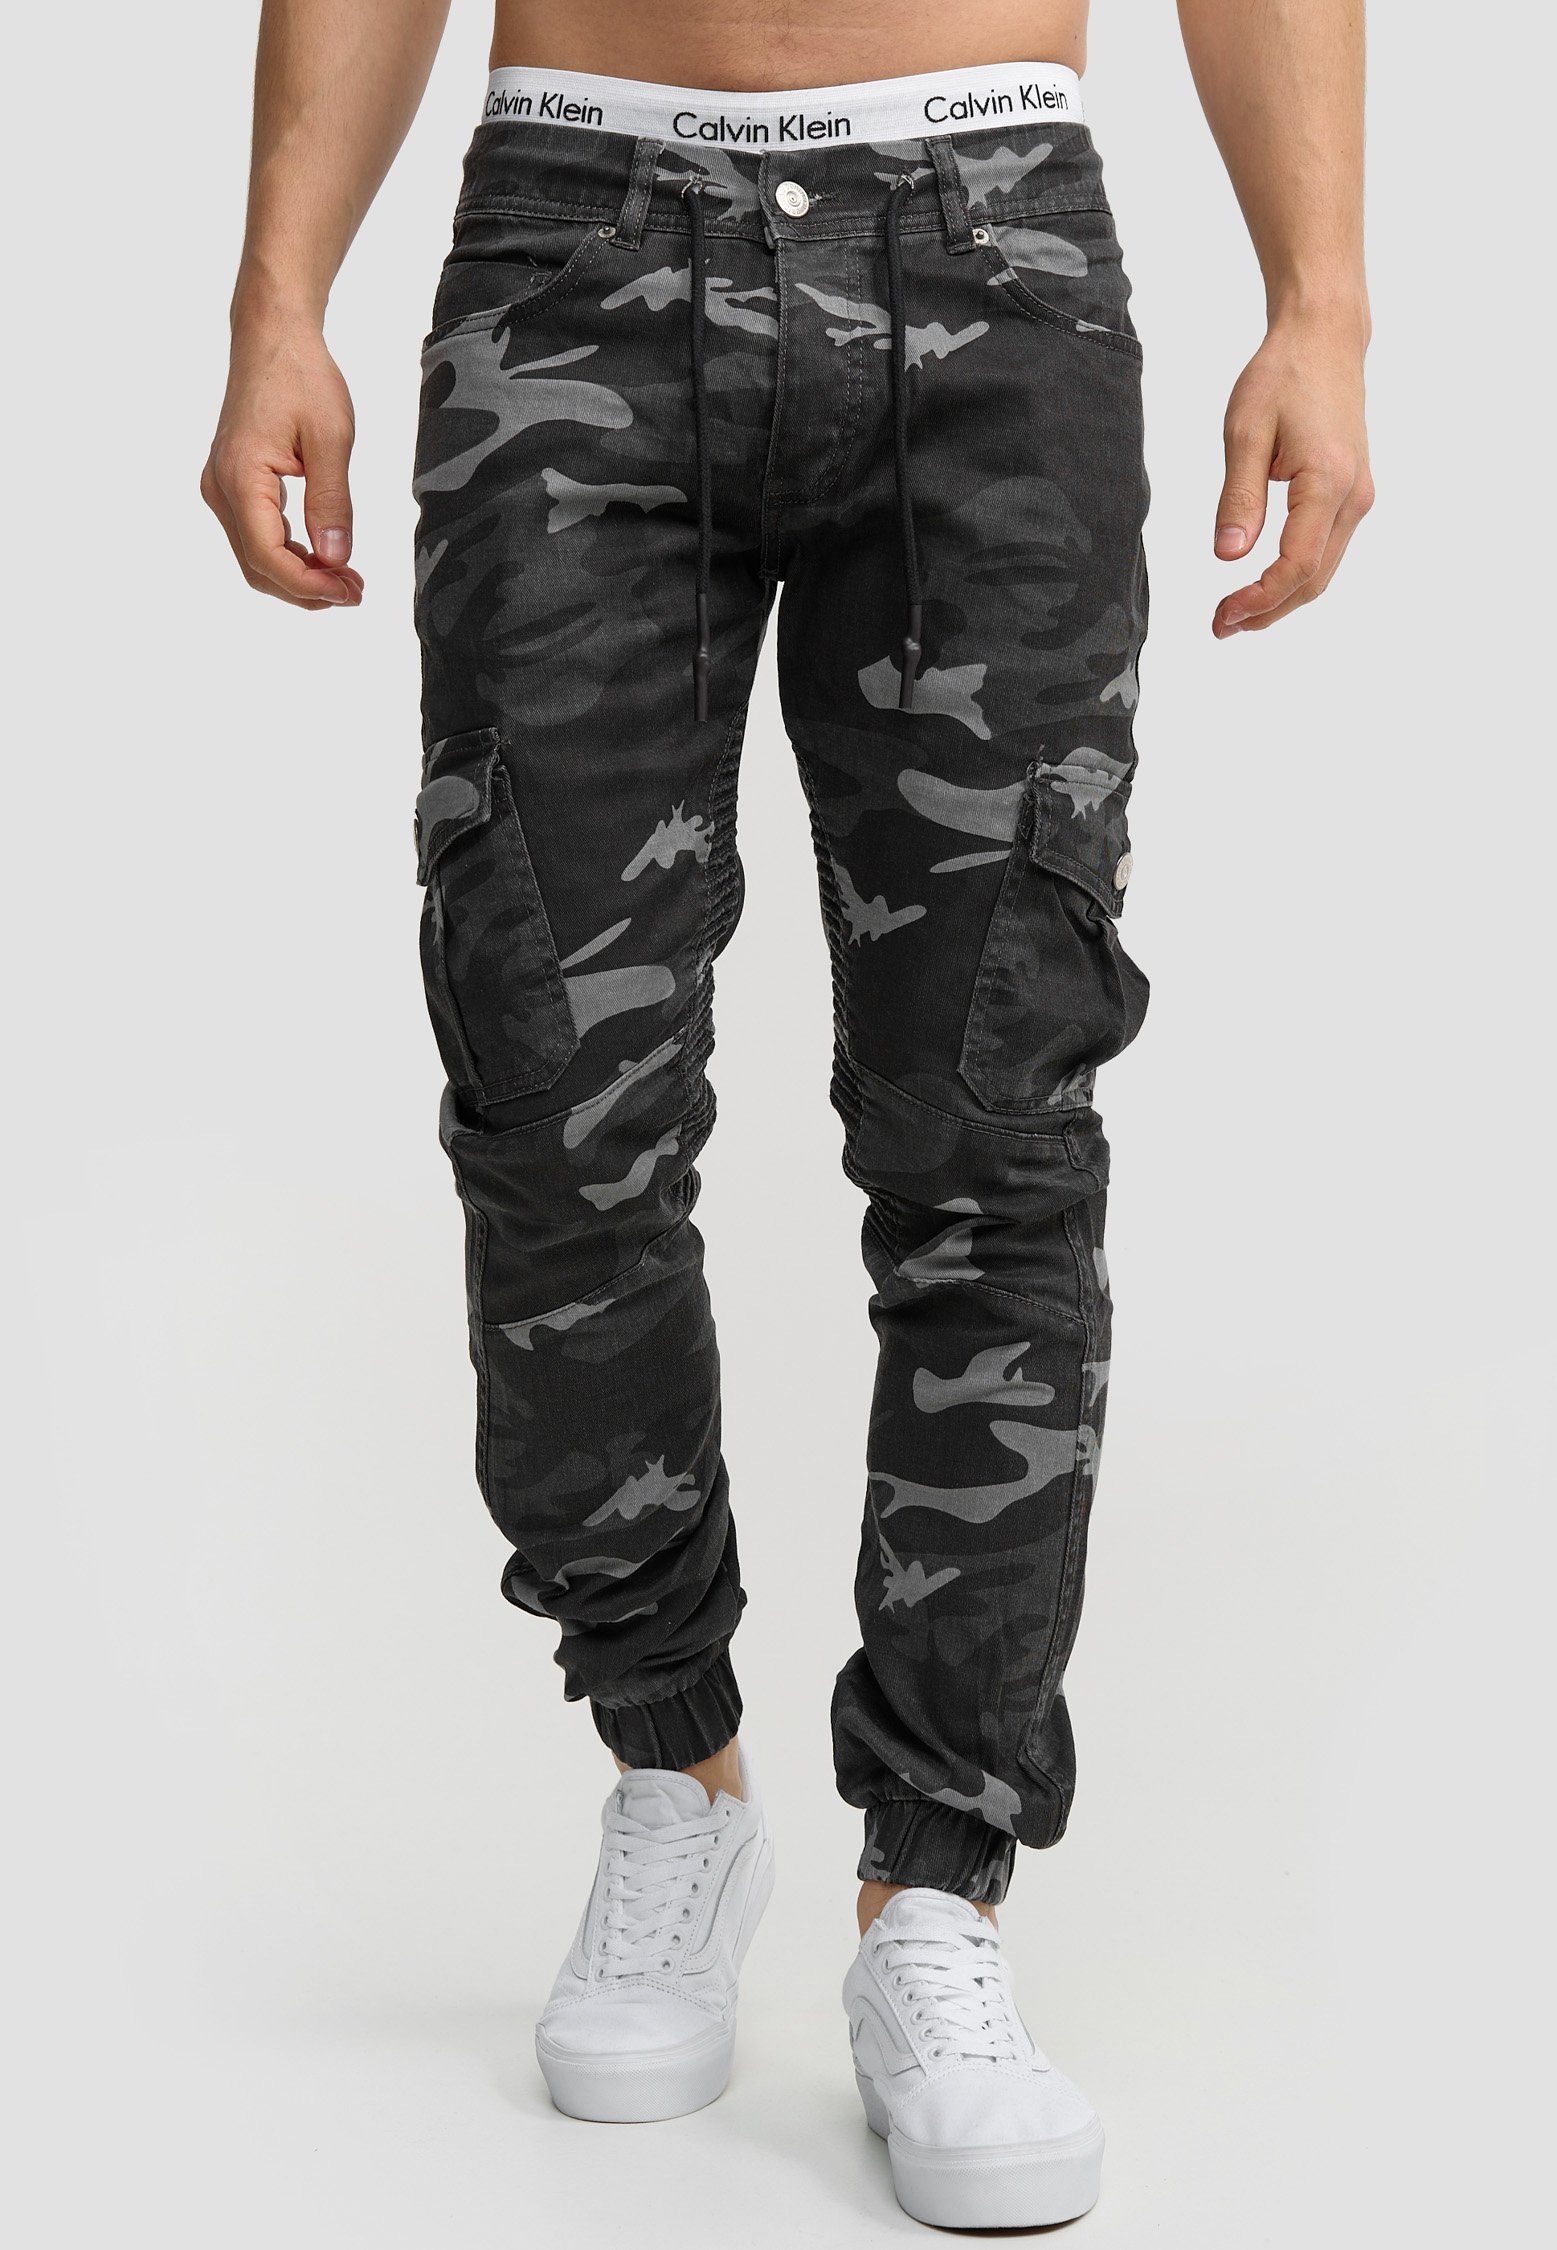 Designer Camouflage Hose Männer Fit Chino Slim Jeans Schwarz Code47 3207C Herren Slim Chinohose Slim-fit-Jeans